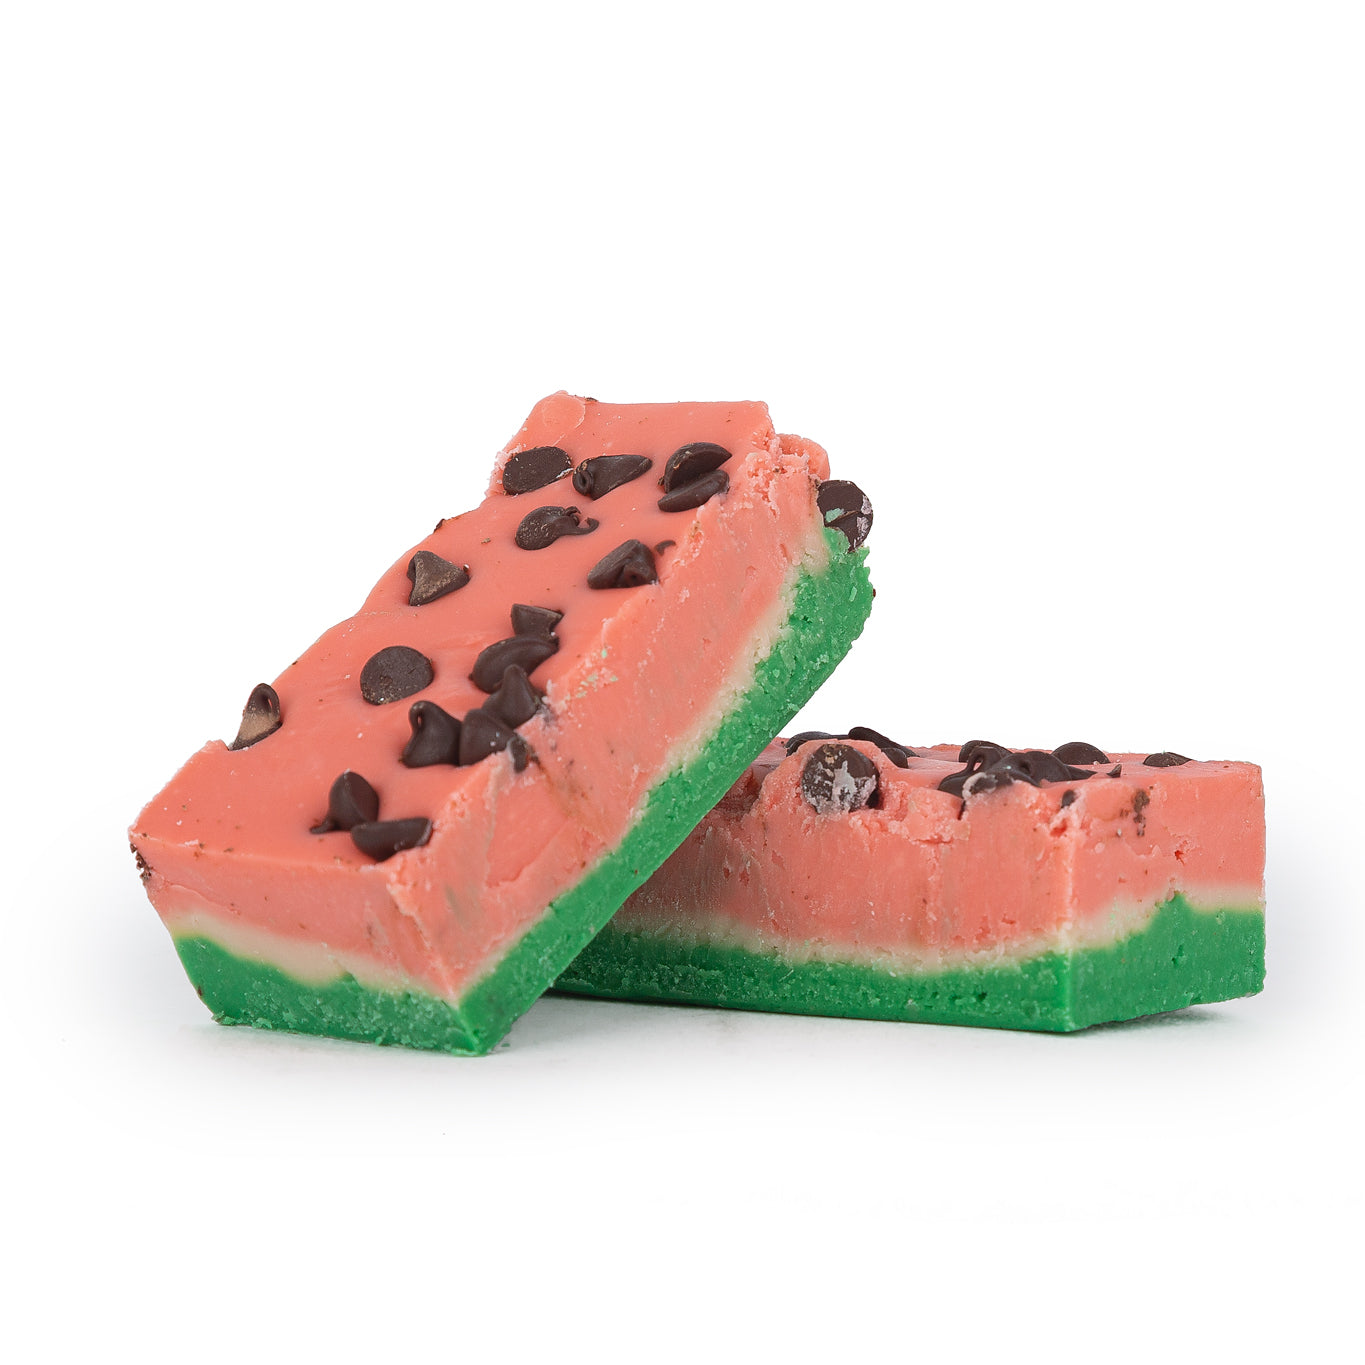 Watermelon Fudge